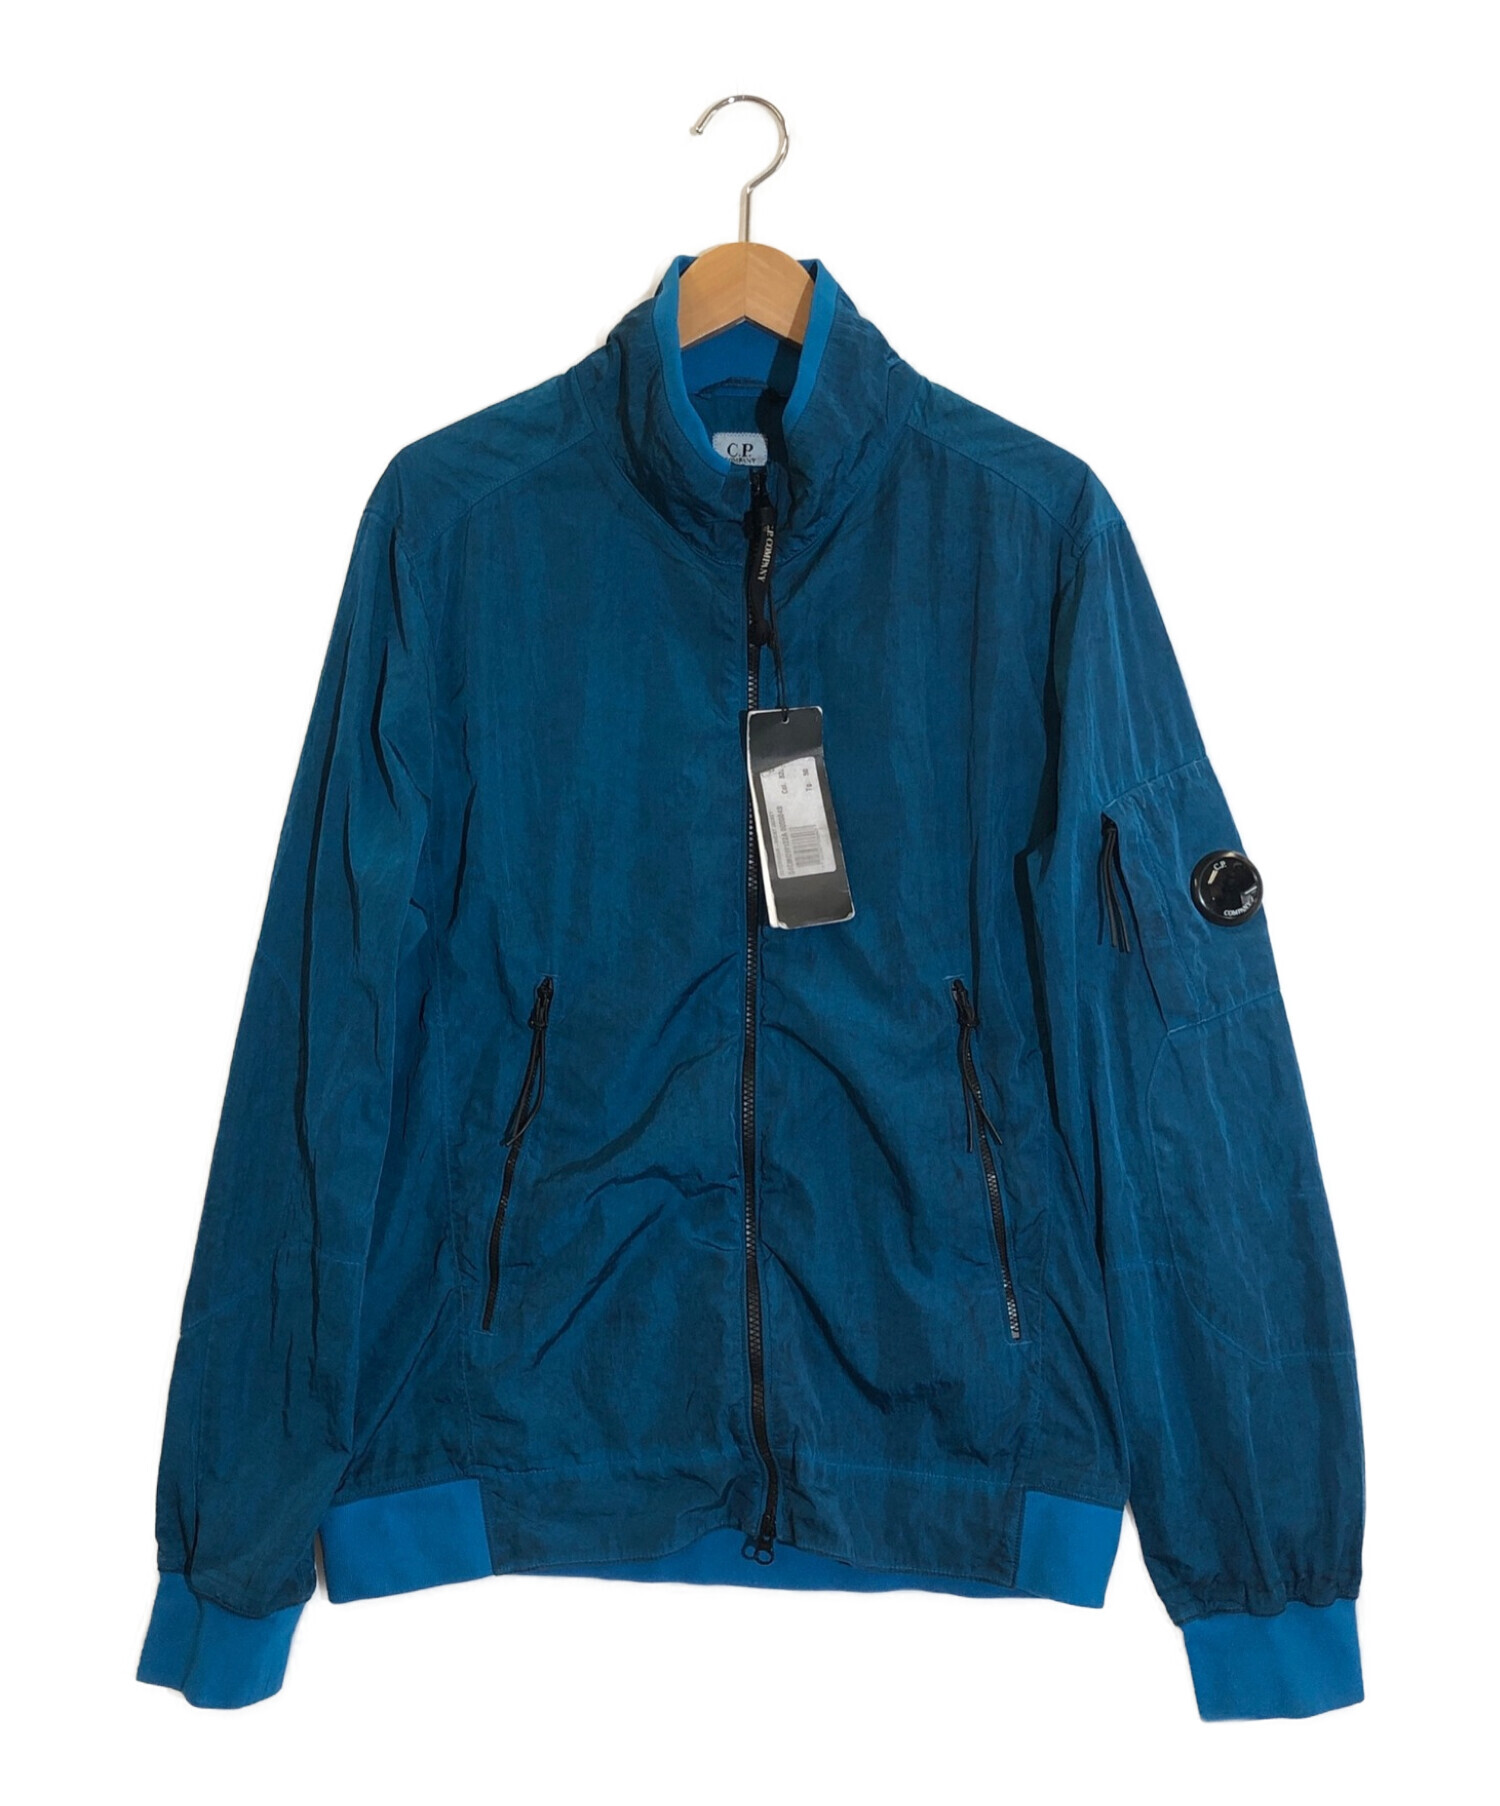 【中古・古着通販】C.P COMPANY (シーピーカンパニー) Short Jacket リカラーショートゴーグルジャケット ブルー サイズ